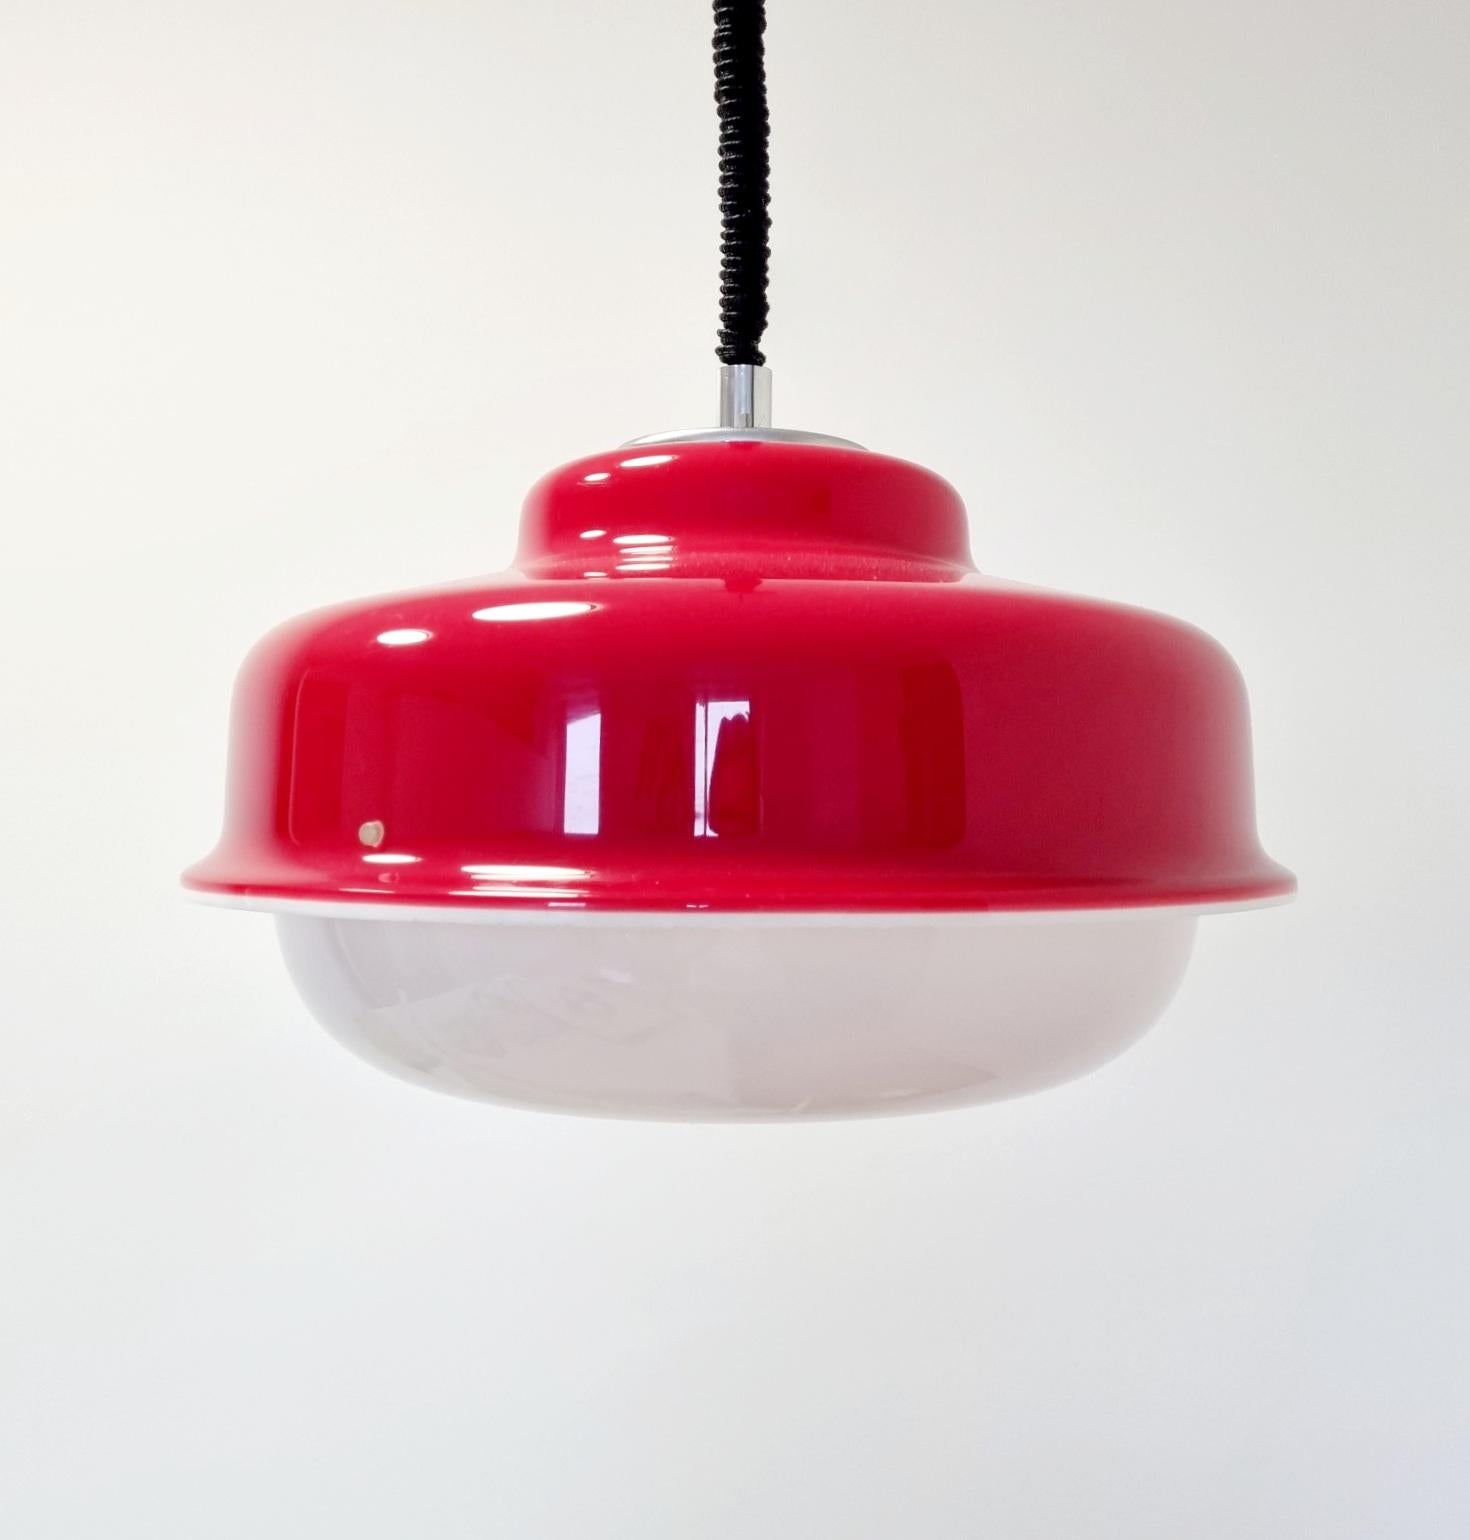 Plastic Harvey Guzzini Red Ceiling Lamp, Italian Design, Italy 70s